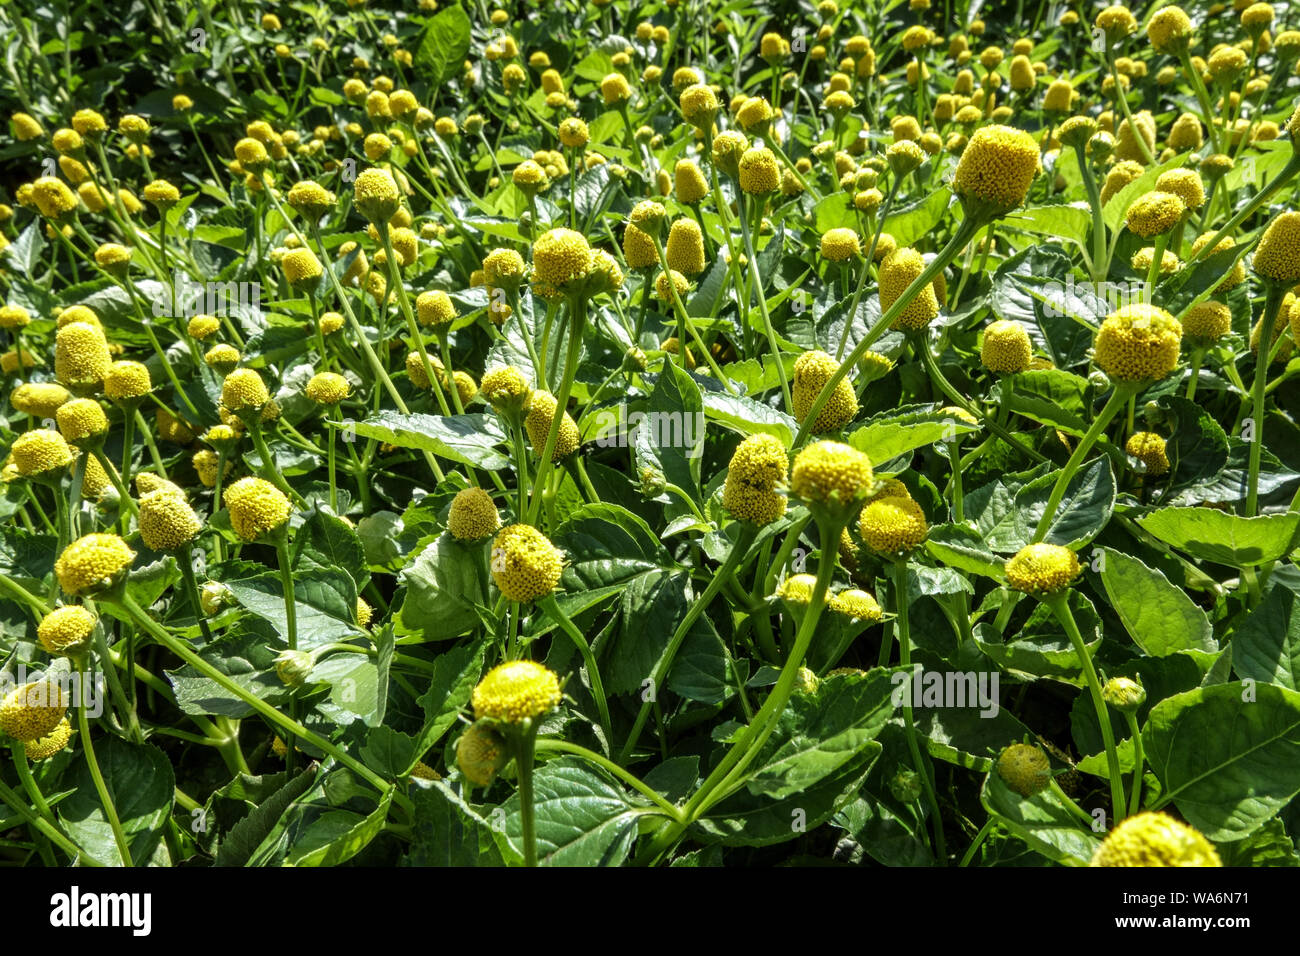 Toothache Plant Spilanthes Acmella oleracea 'Lemon Drops' Stock Photo